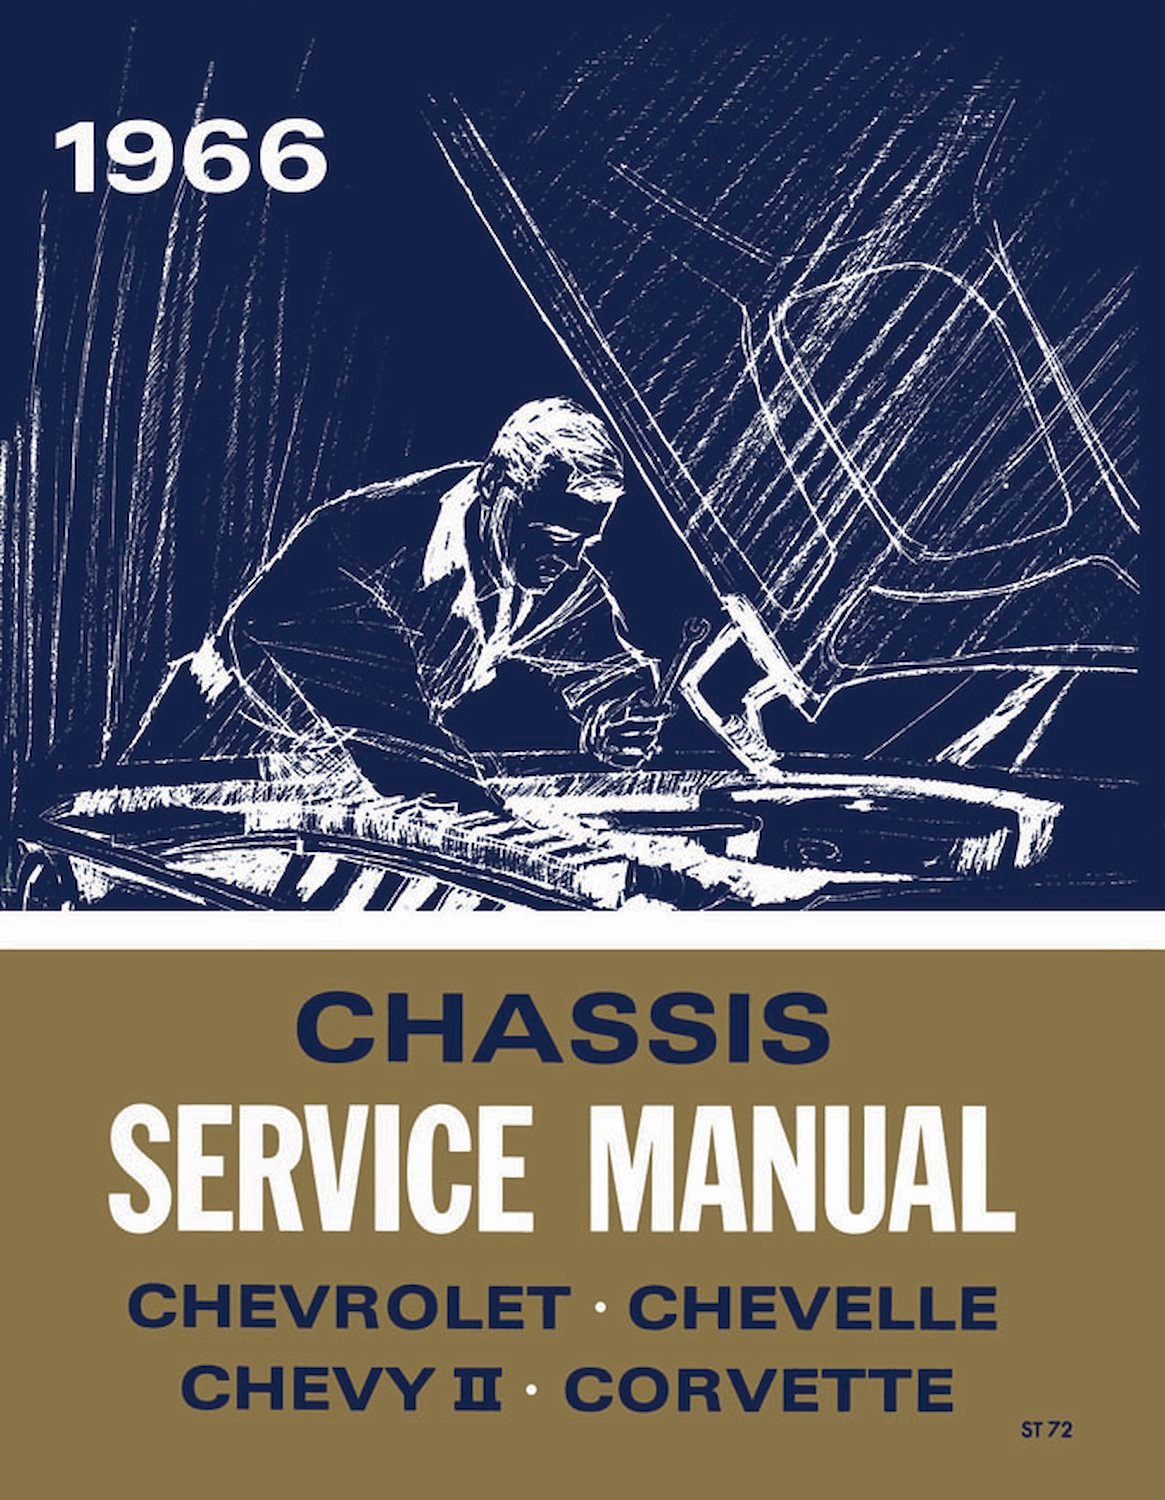 Chassis Service Manual for 1966 Chevrolet Full Size, Chevelle, Chevy II, Corvette, El Camino, Malibu